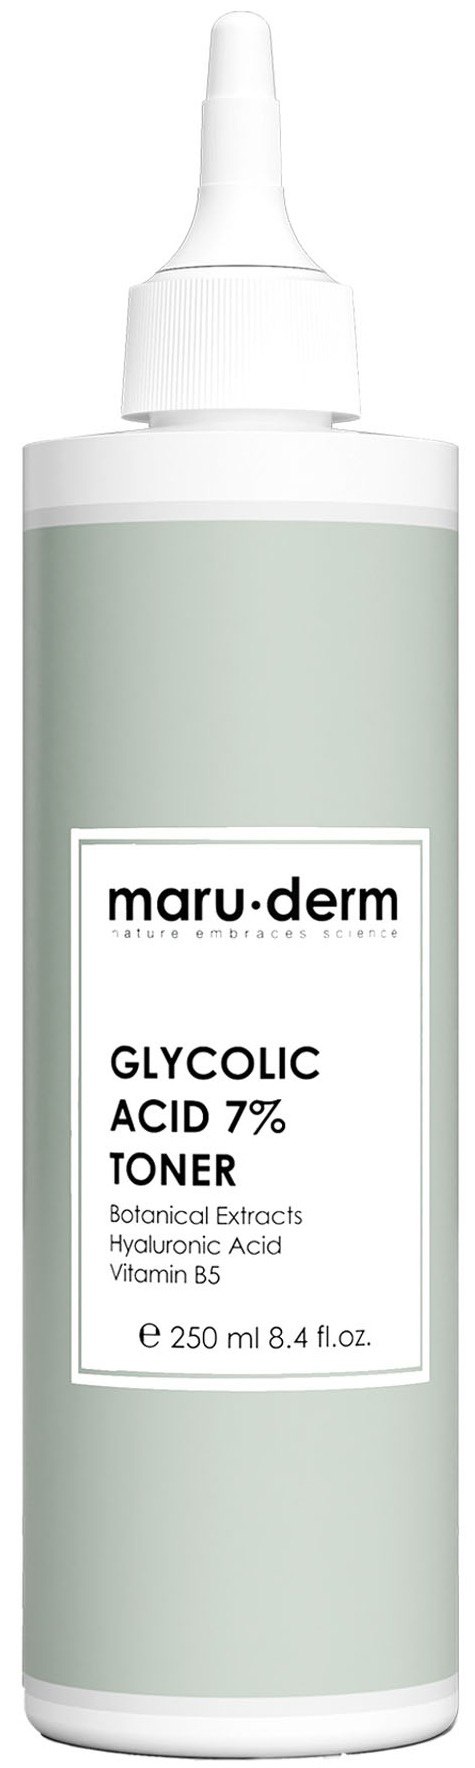 Maruderm Glycolic Acid 7% Toner